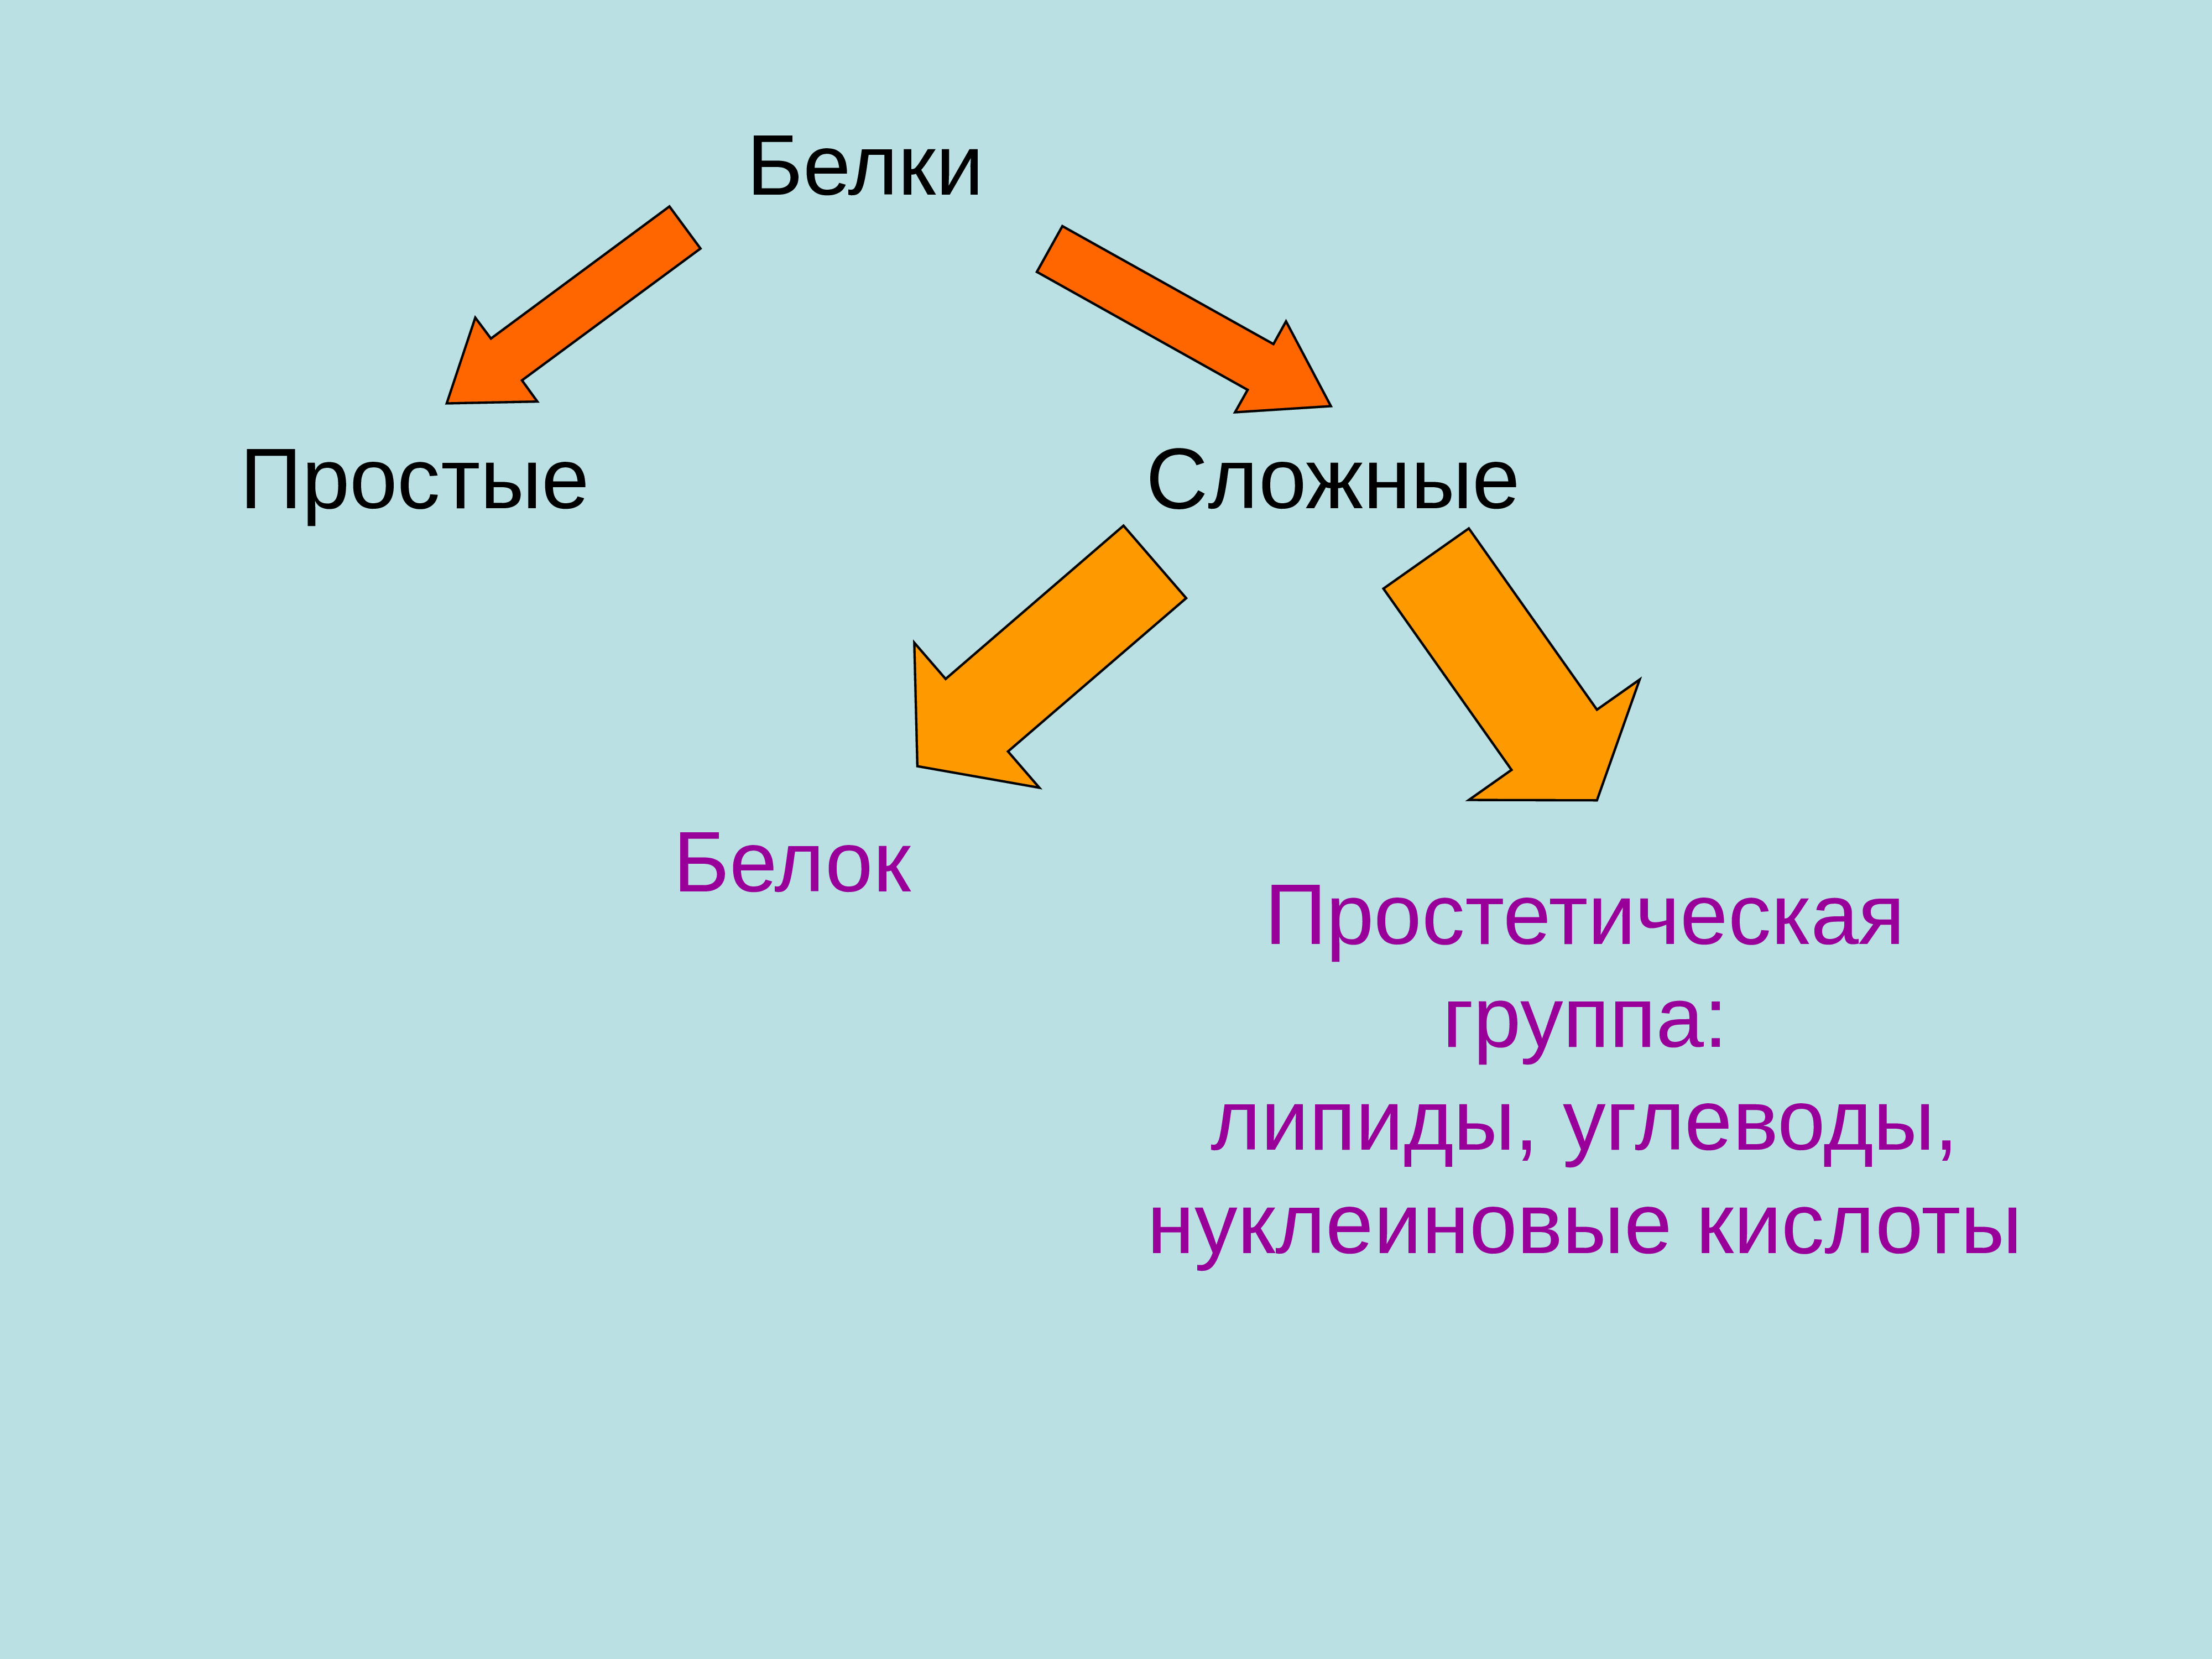 Простетические группы белков. Простые и сложные белки. Примеры простых белков. Простые белки и сложные белки. Простые и сложные белки примеры.